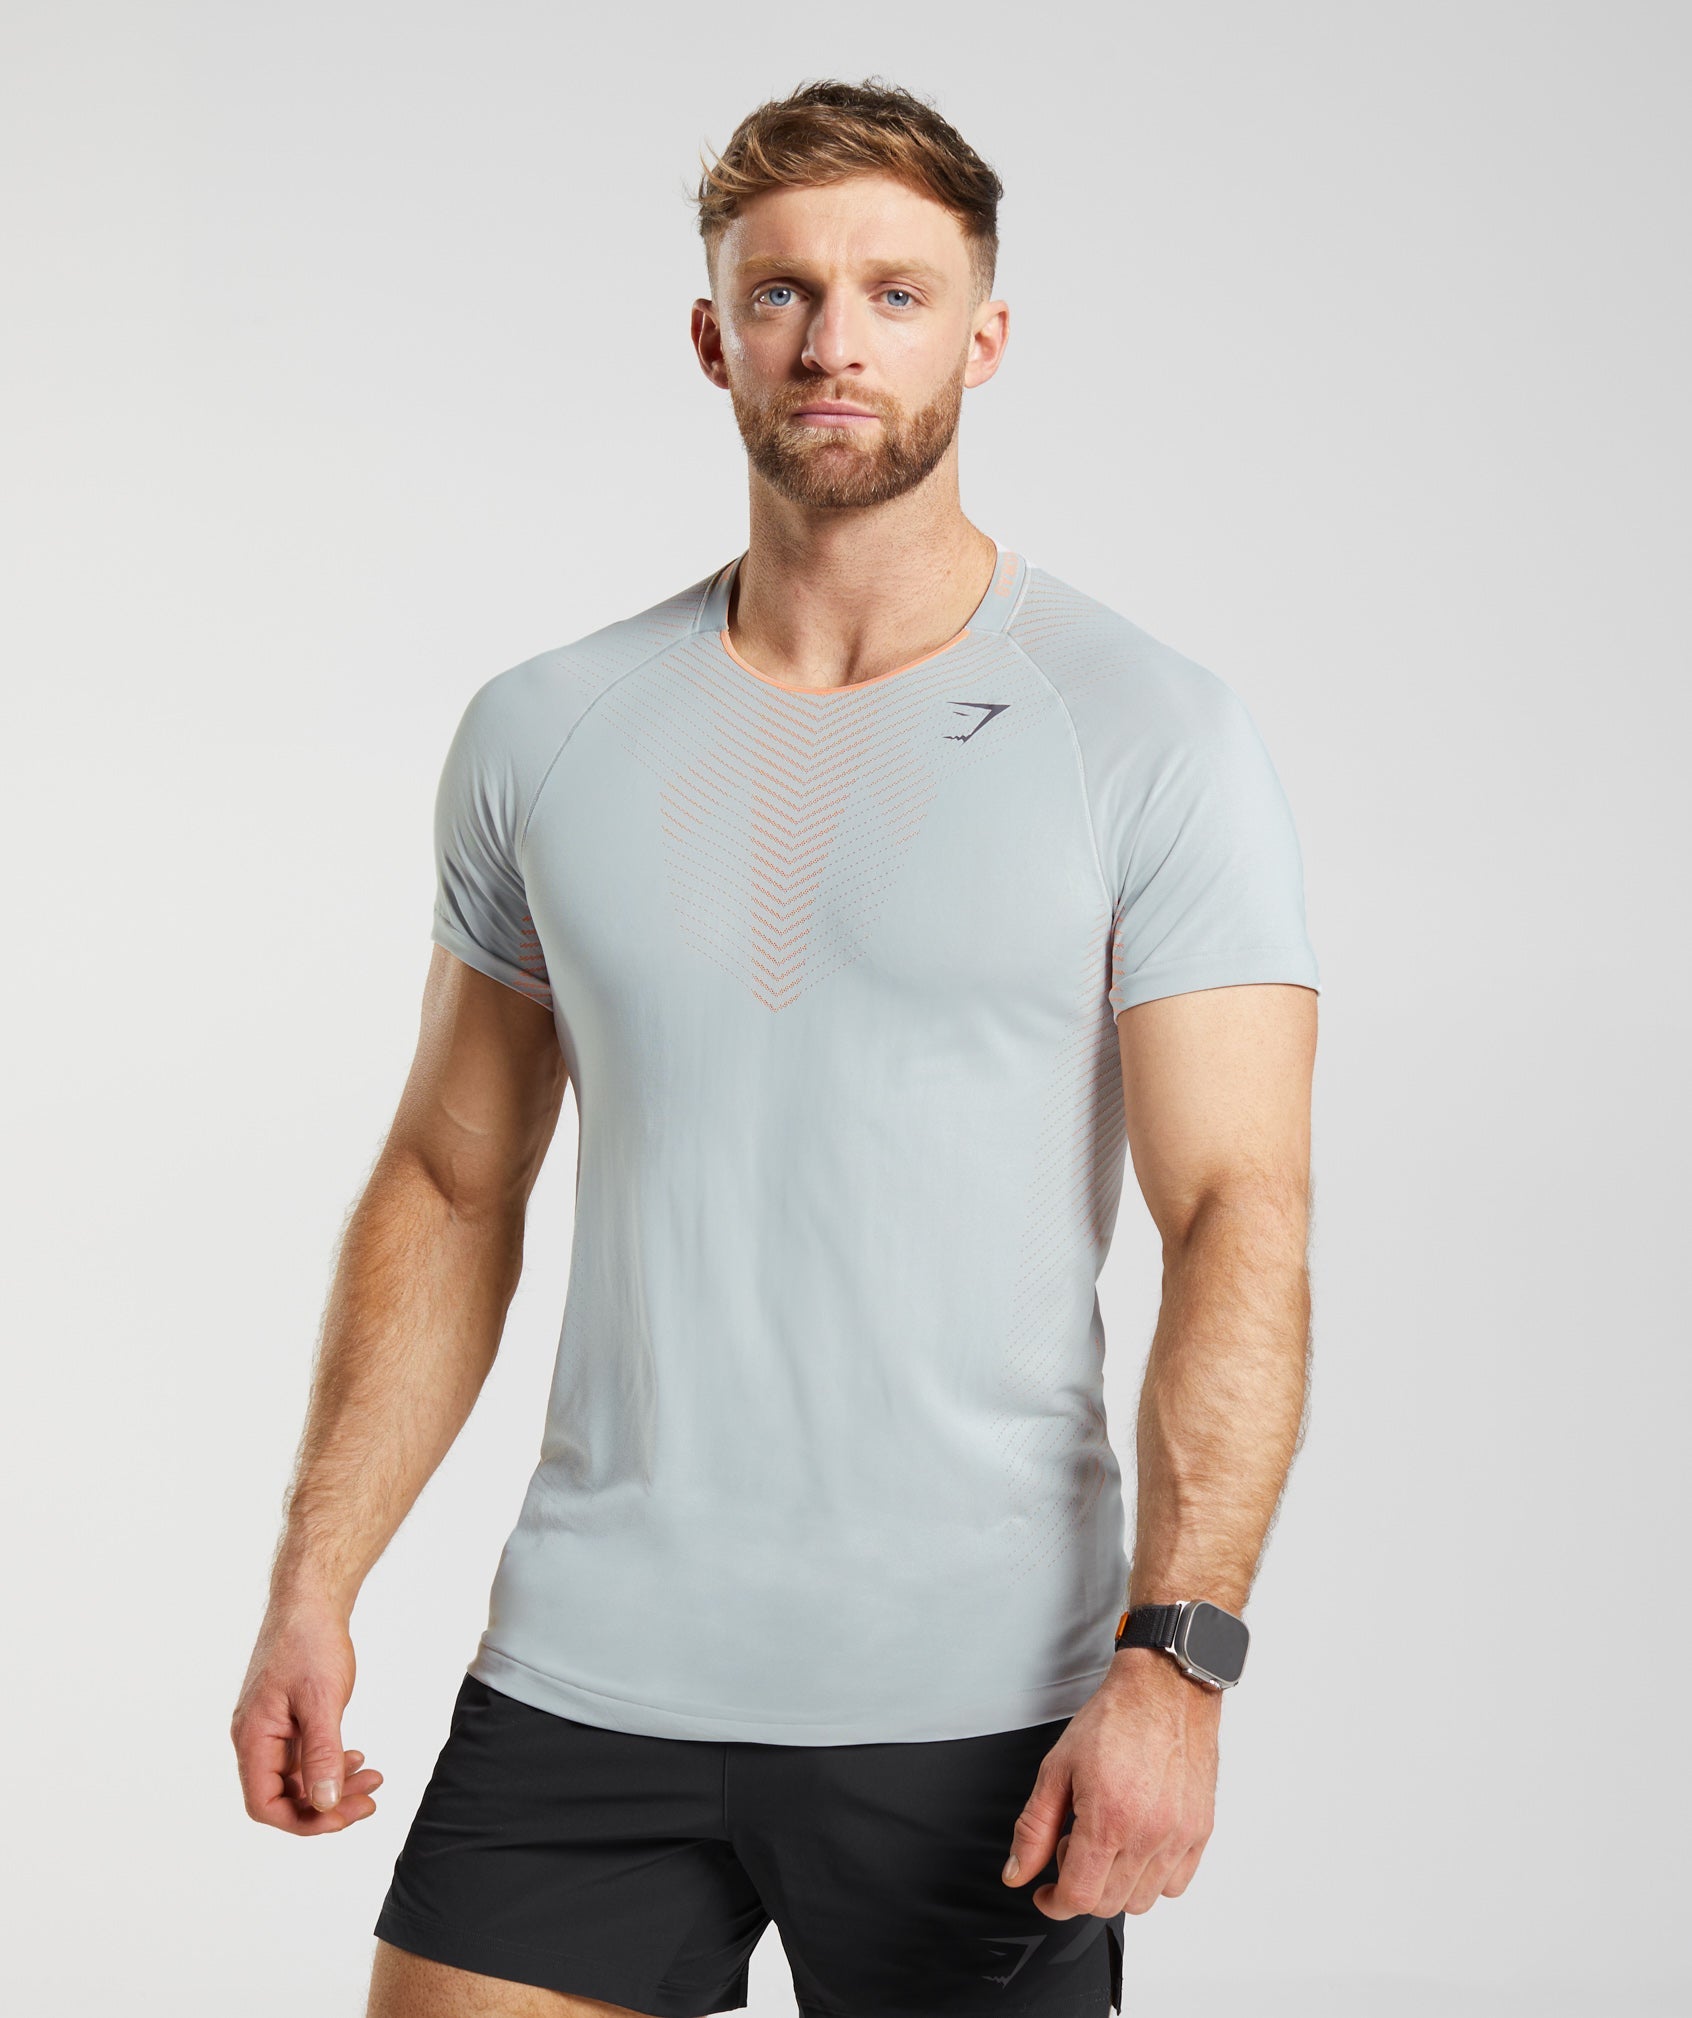 Camiseta Gymshark Portugal Apex Homem Laranja Tamanho XL Saldos